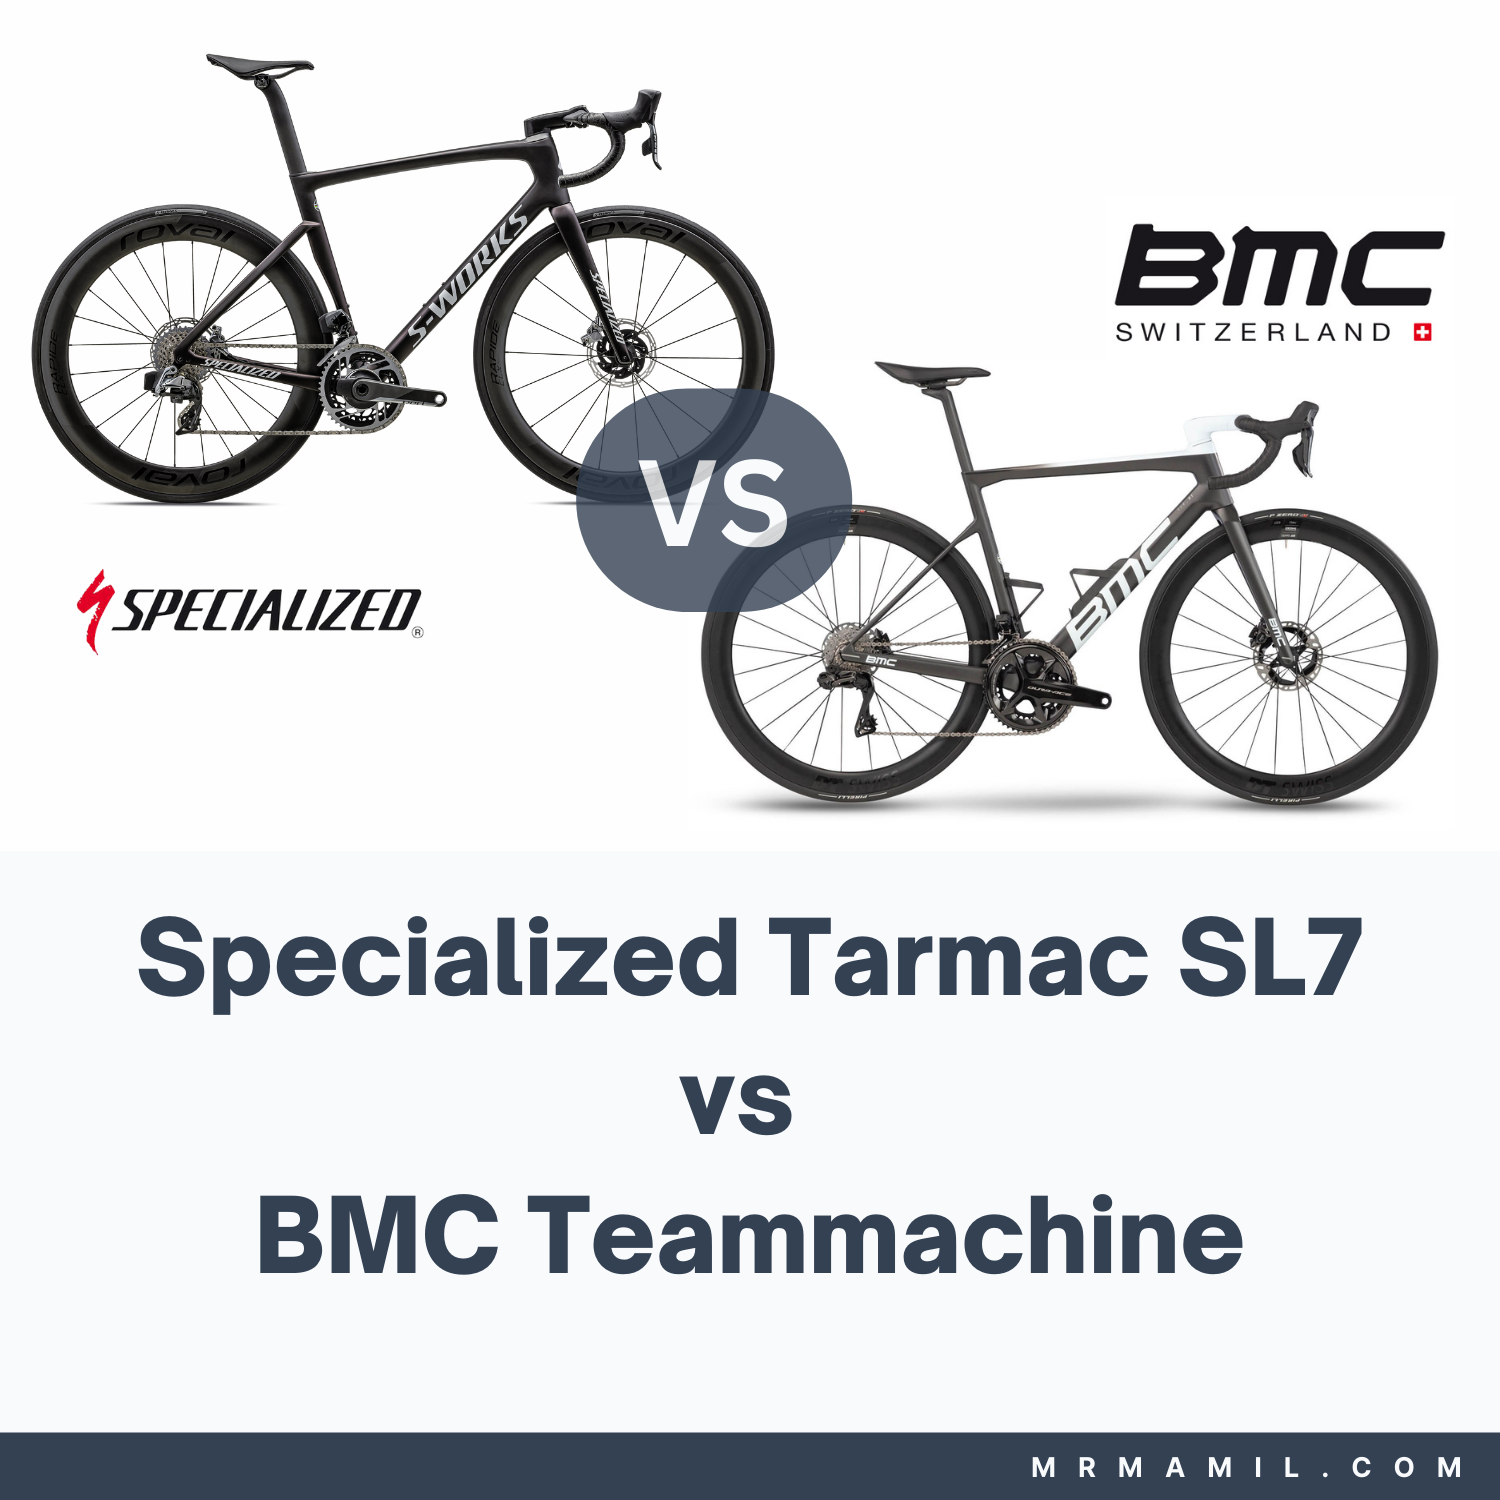 Specialized Tarmac SL7 vs BMC Teammachine